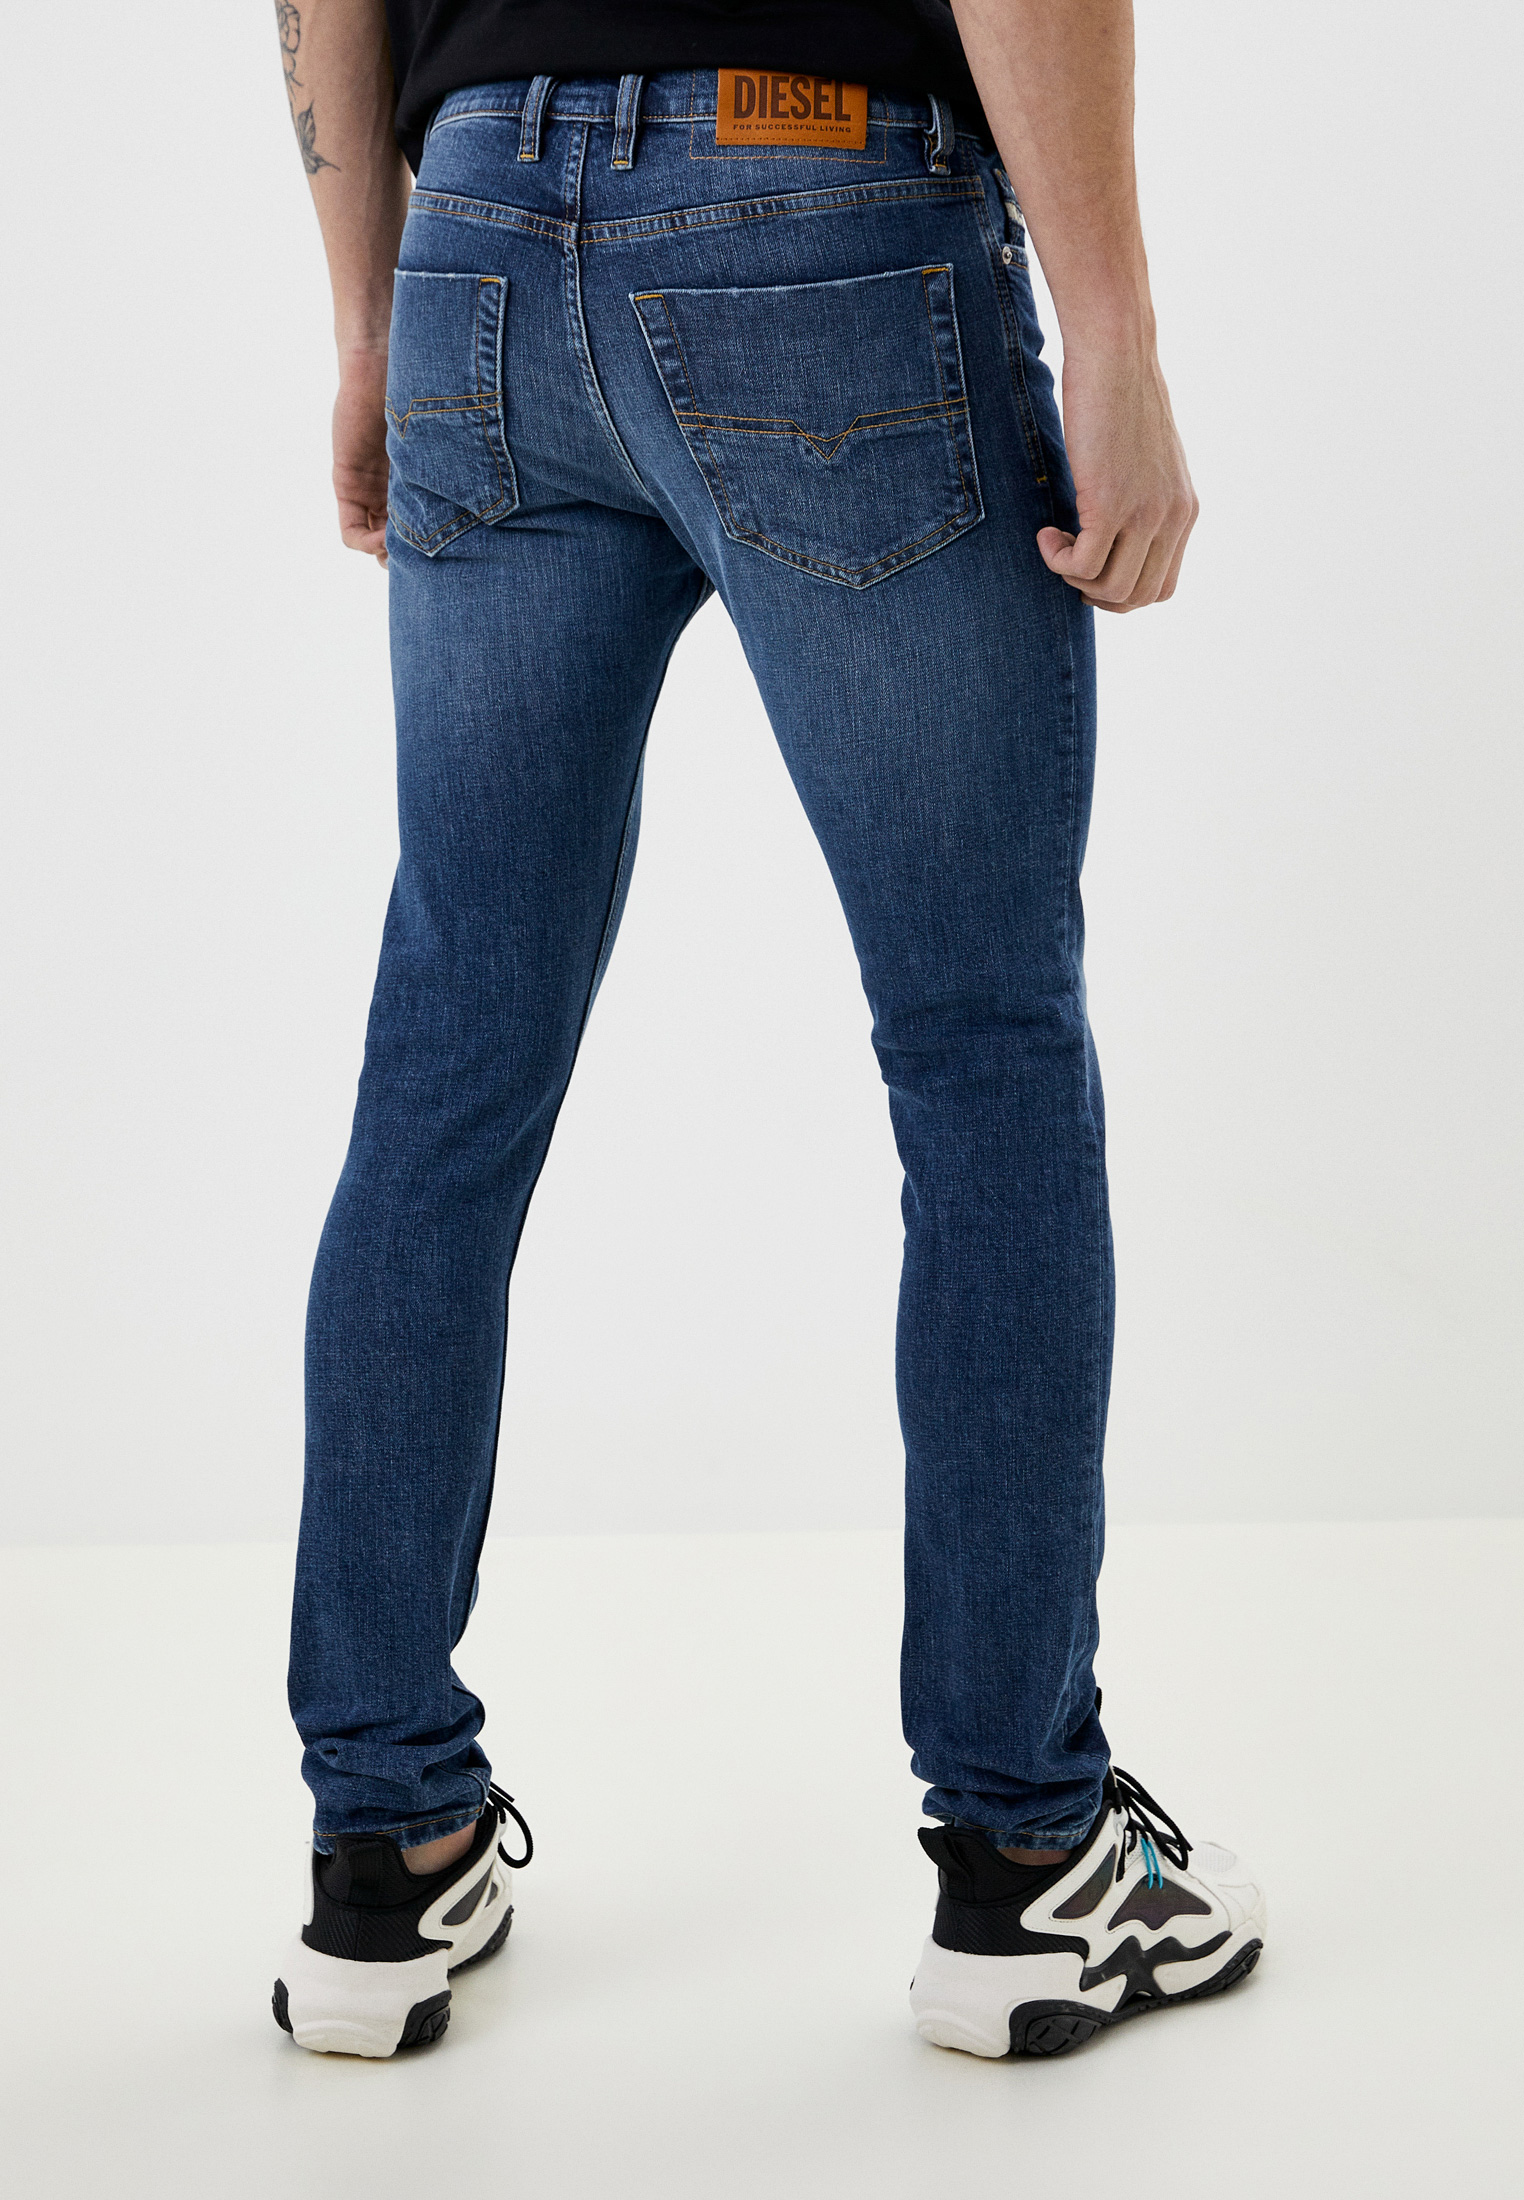 Мужские зауженные джинсы Diesel (Дизель) 00SWID009IX: изображение 3